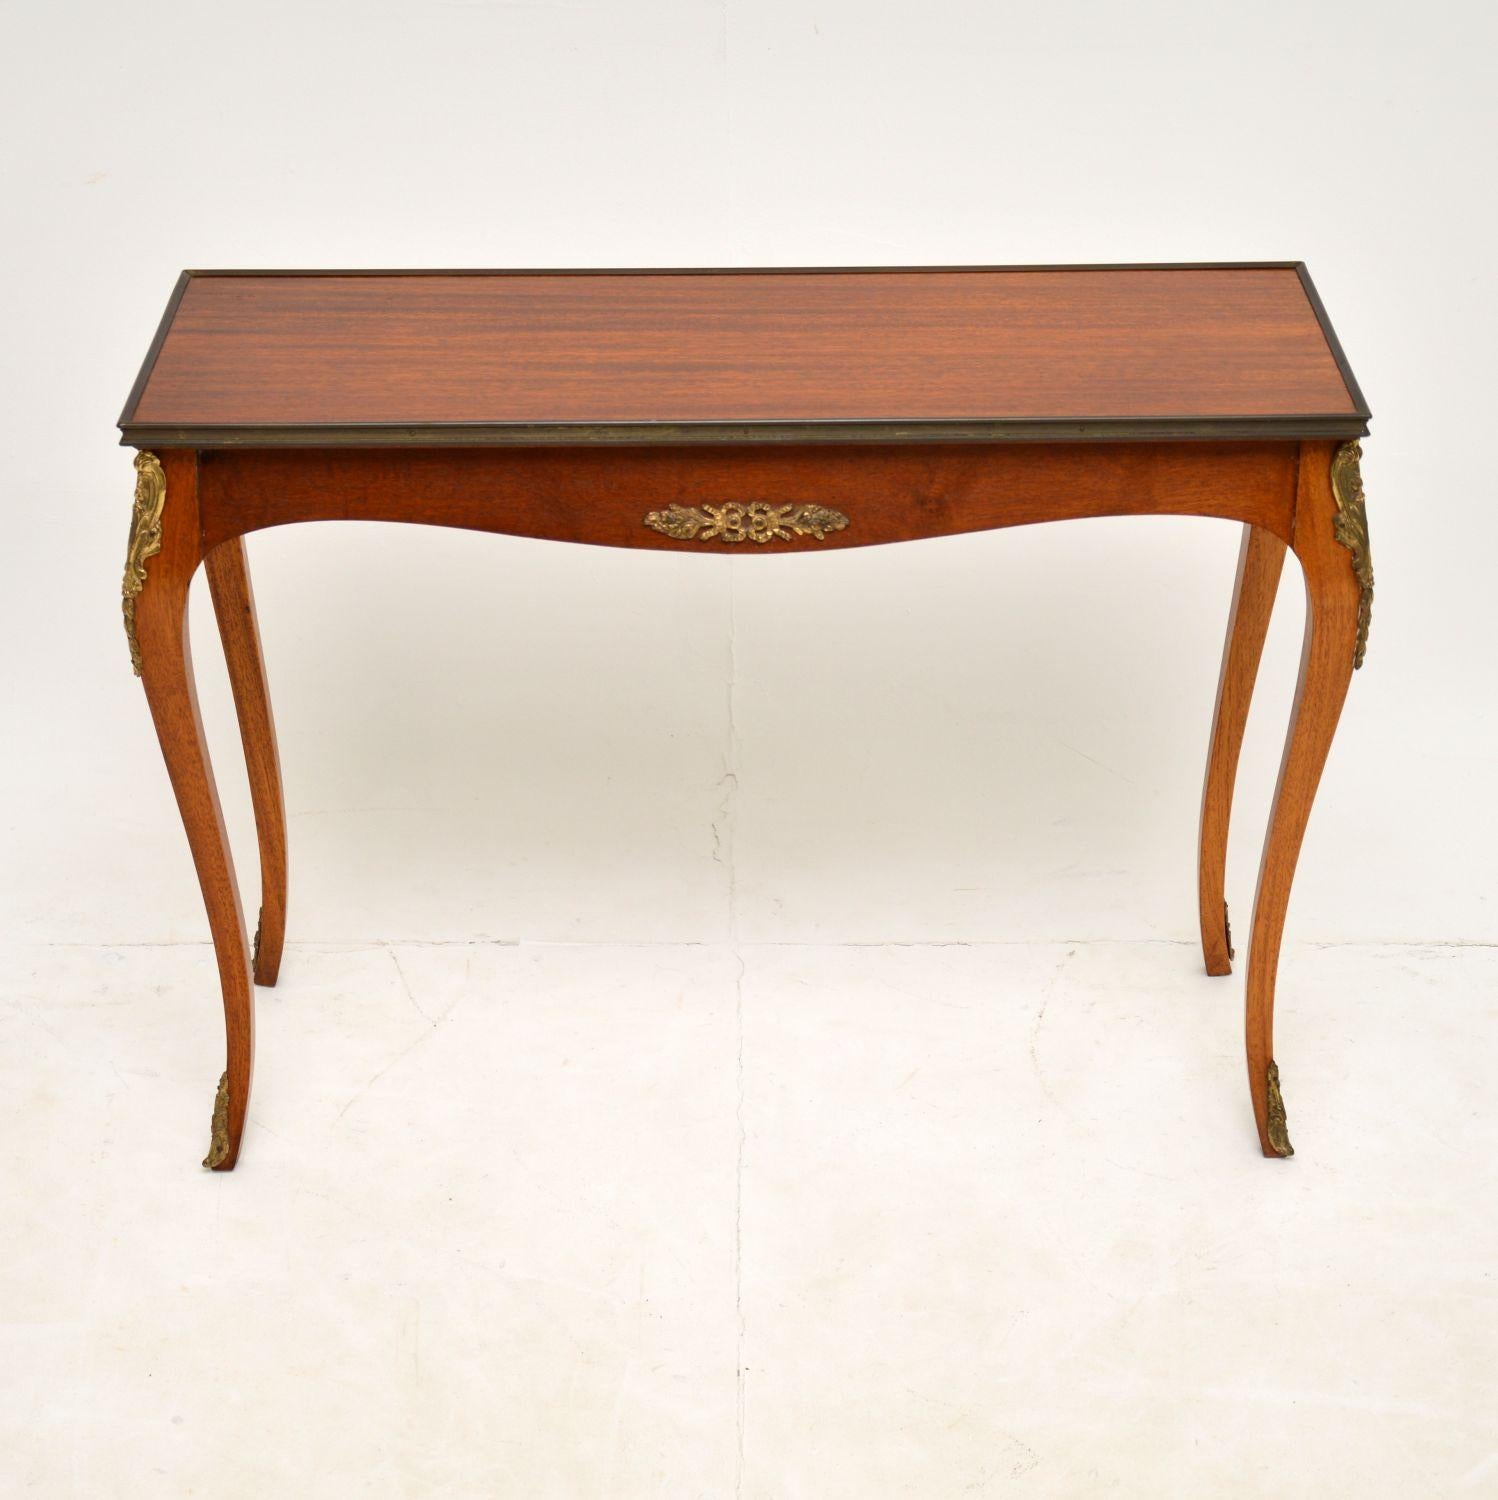 Une jolie table d'appoint en bois aux proportions inhabituelles. Il a été fabriqué en France et date des années 1920-30.

Sa taille est inhabituelle, bien qu'elle soit conçue pour ressembler à une table console, elle est en fait à peine plus grande